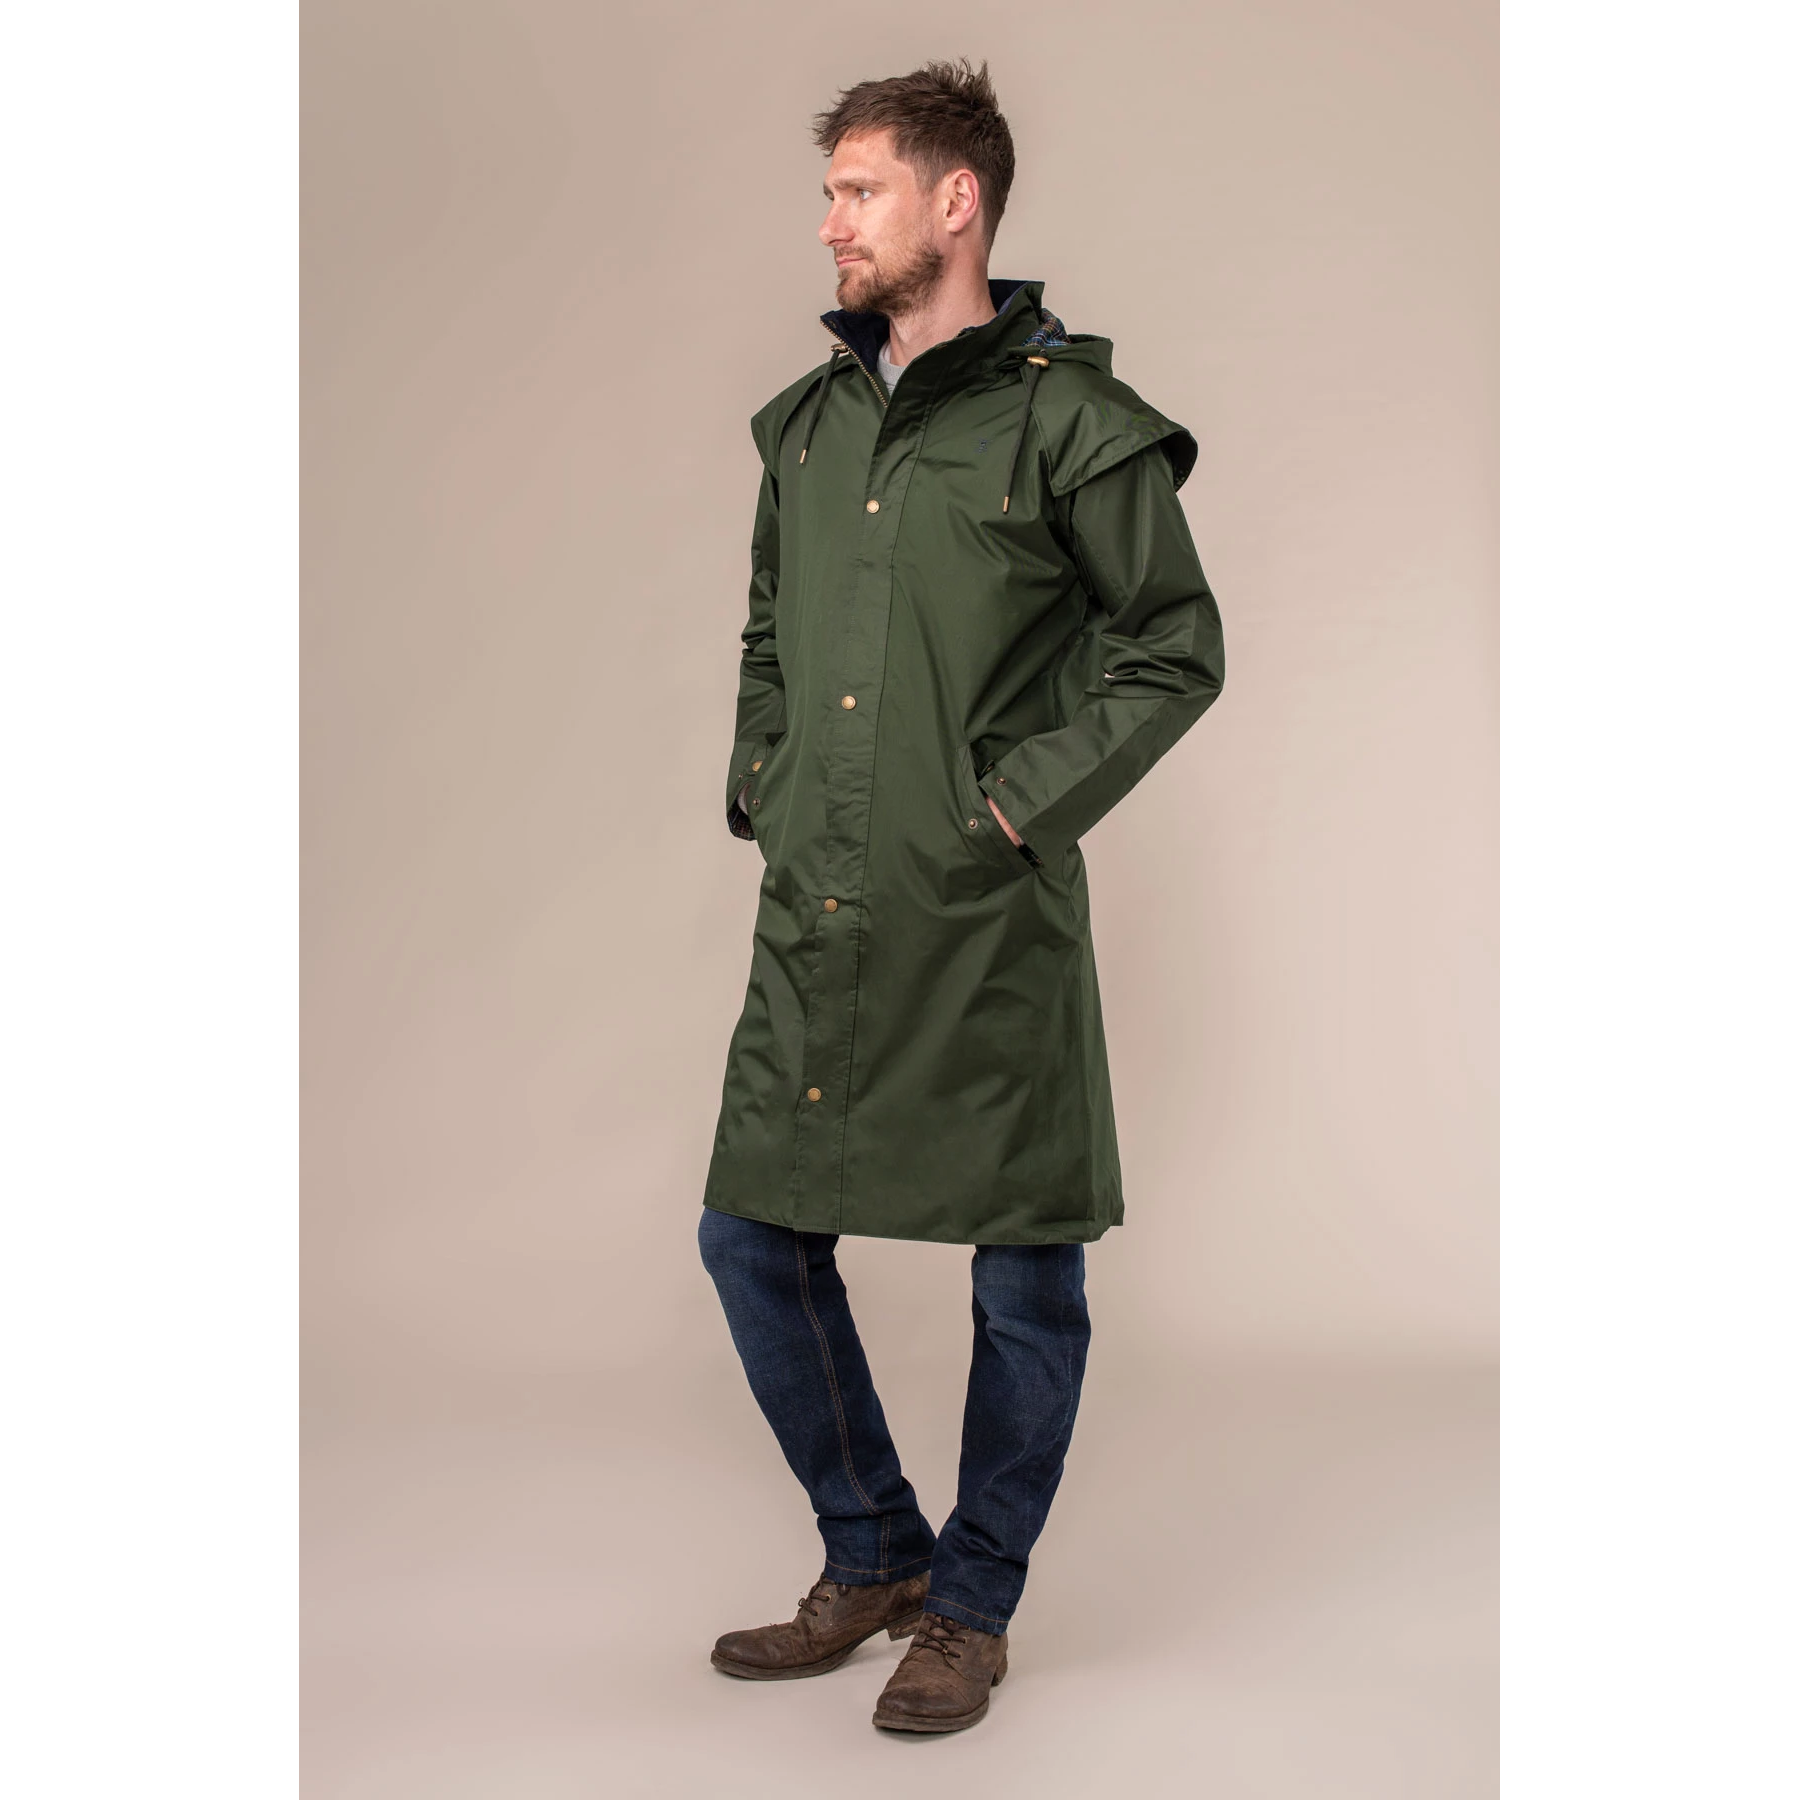 LightHouse Men's Stockman Full Length Rain Coat